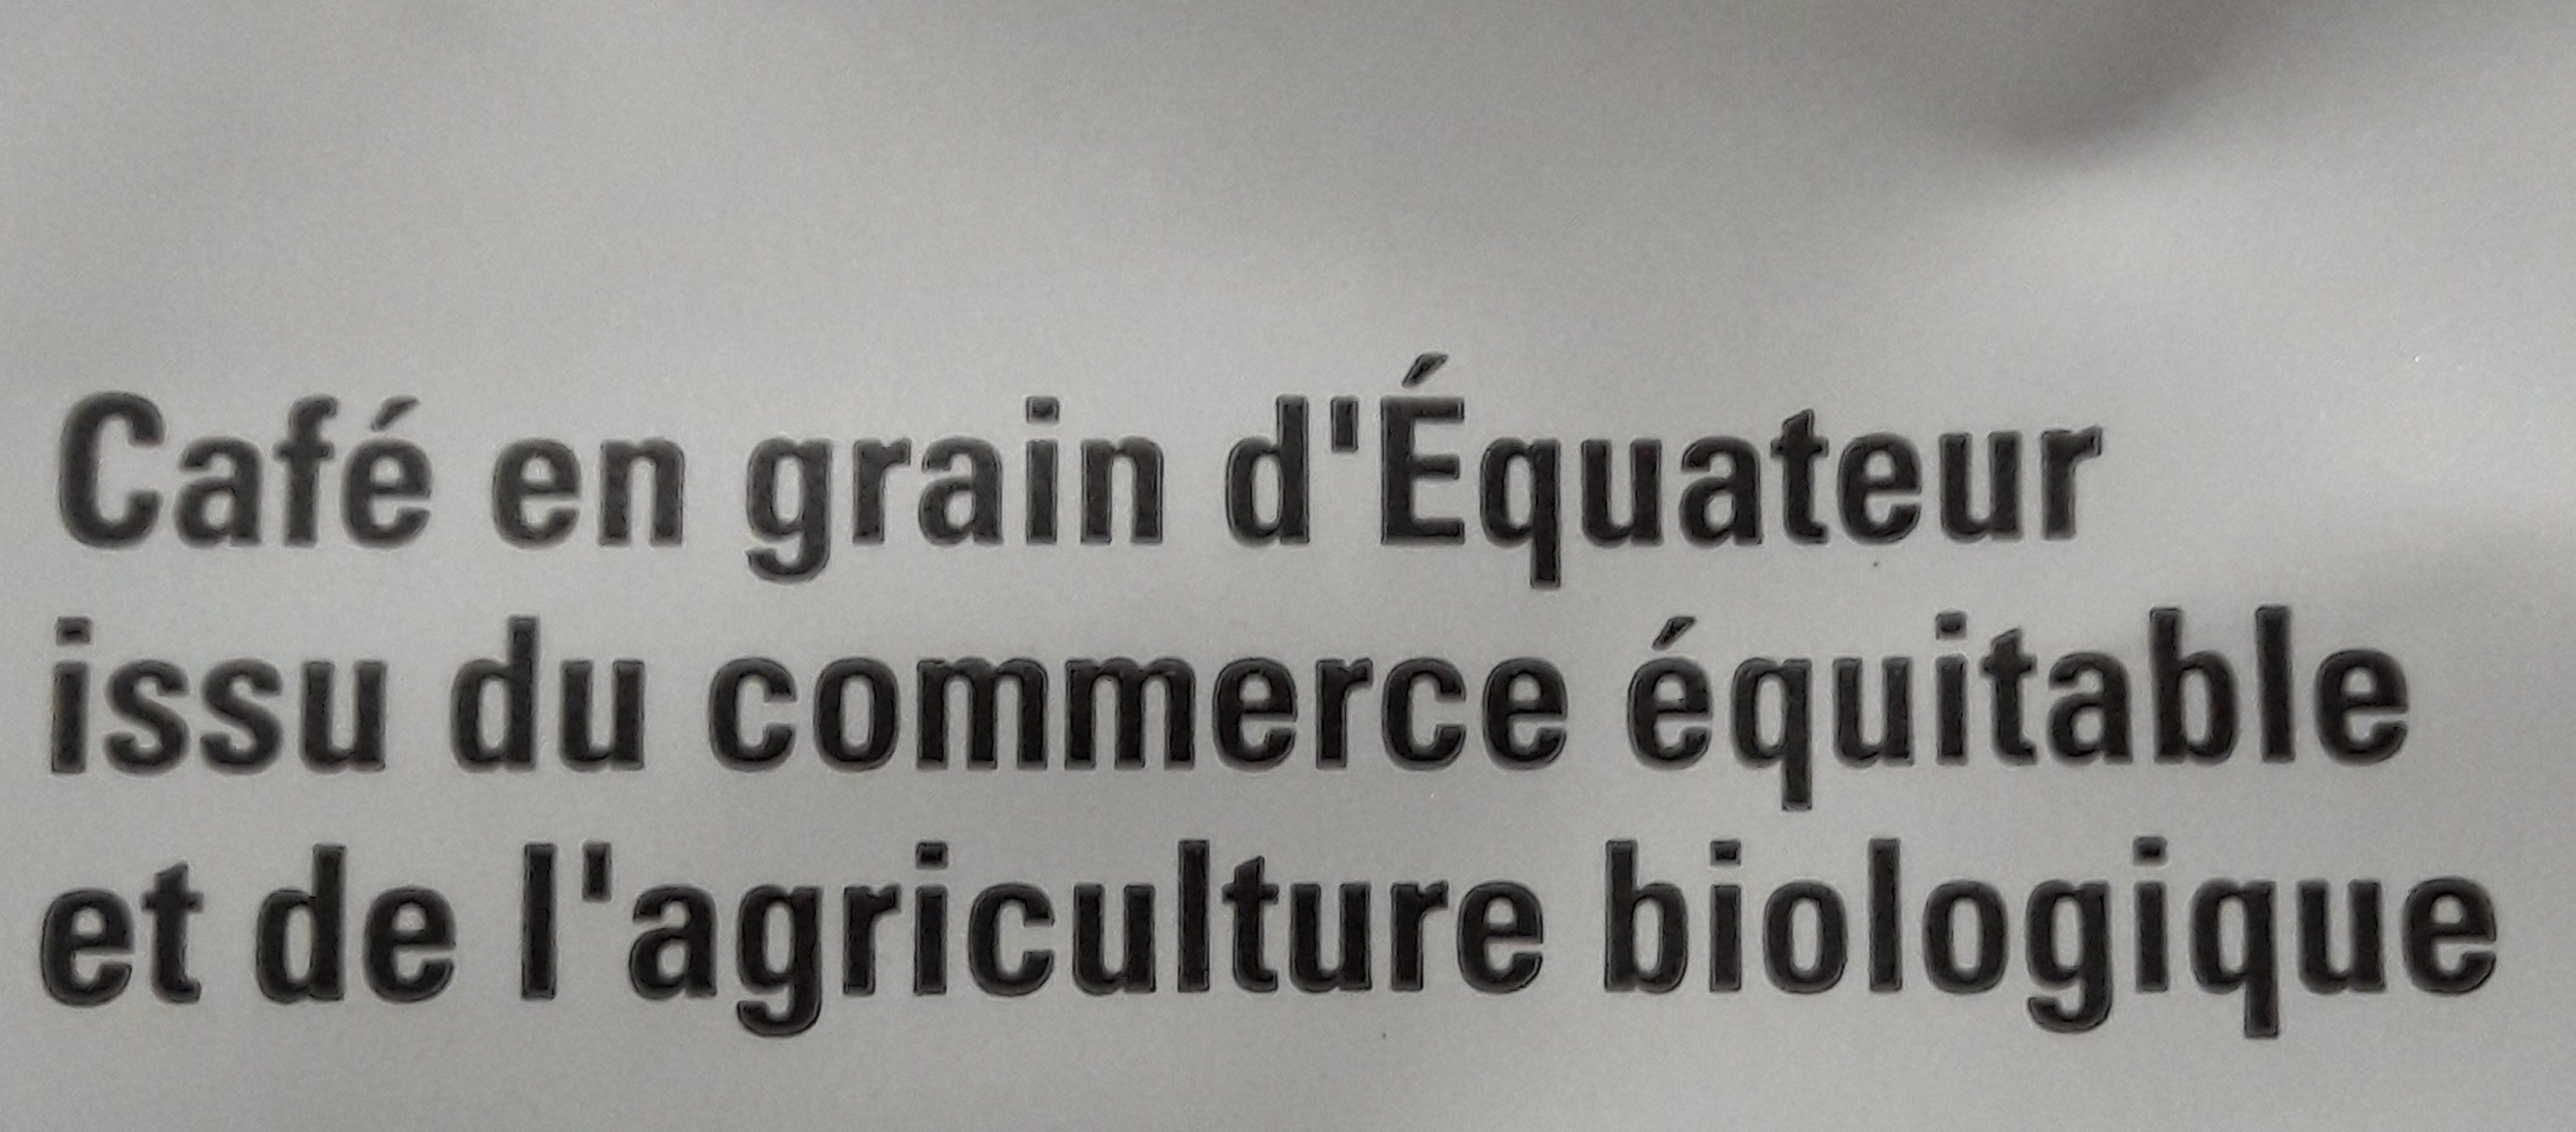 Café équateur Grains Bio & équitable - Ingrédients